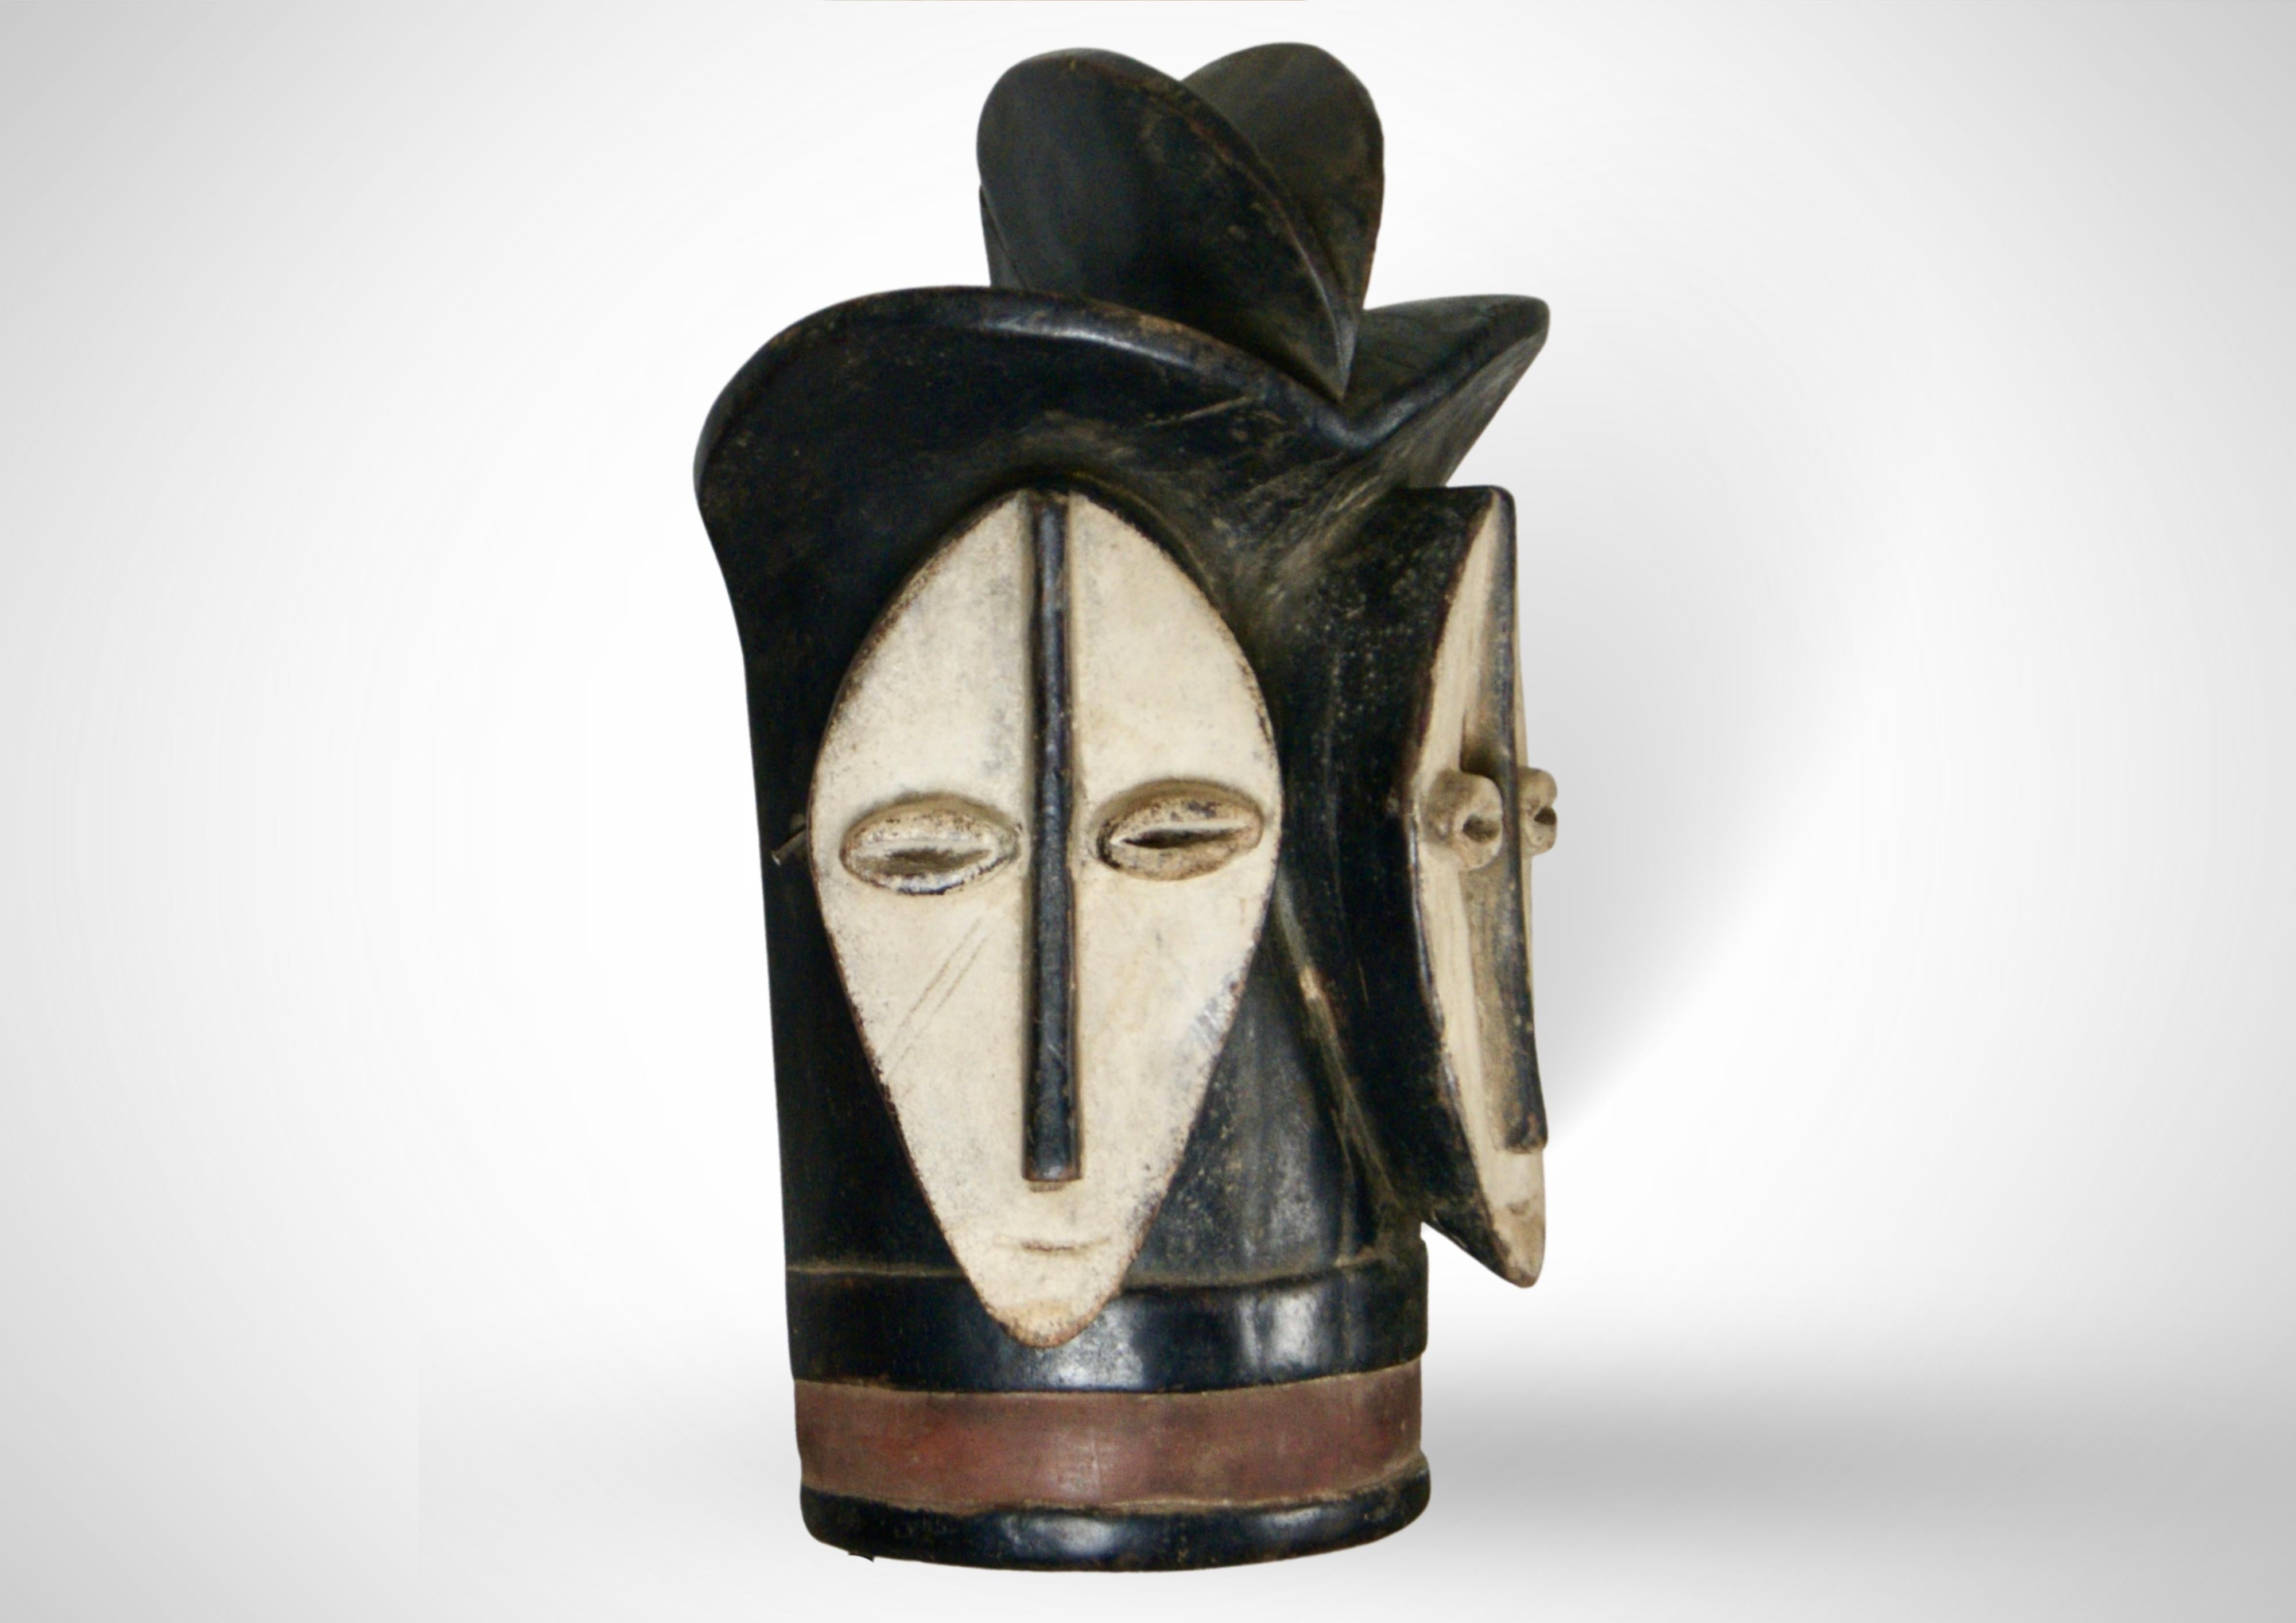 Seltene große doppelgesichtige Lega-Maske der Bwami-Gesellschaft in der Demokratischen Republik Kongo (DRC), um 1930.
Diese Maske ist insofern sehr selten, als es sich um eine großformatige Zeremonialmaske handelt, die für eine Gruppe hochrangiger